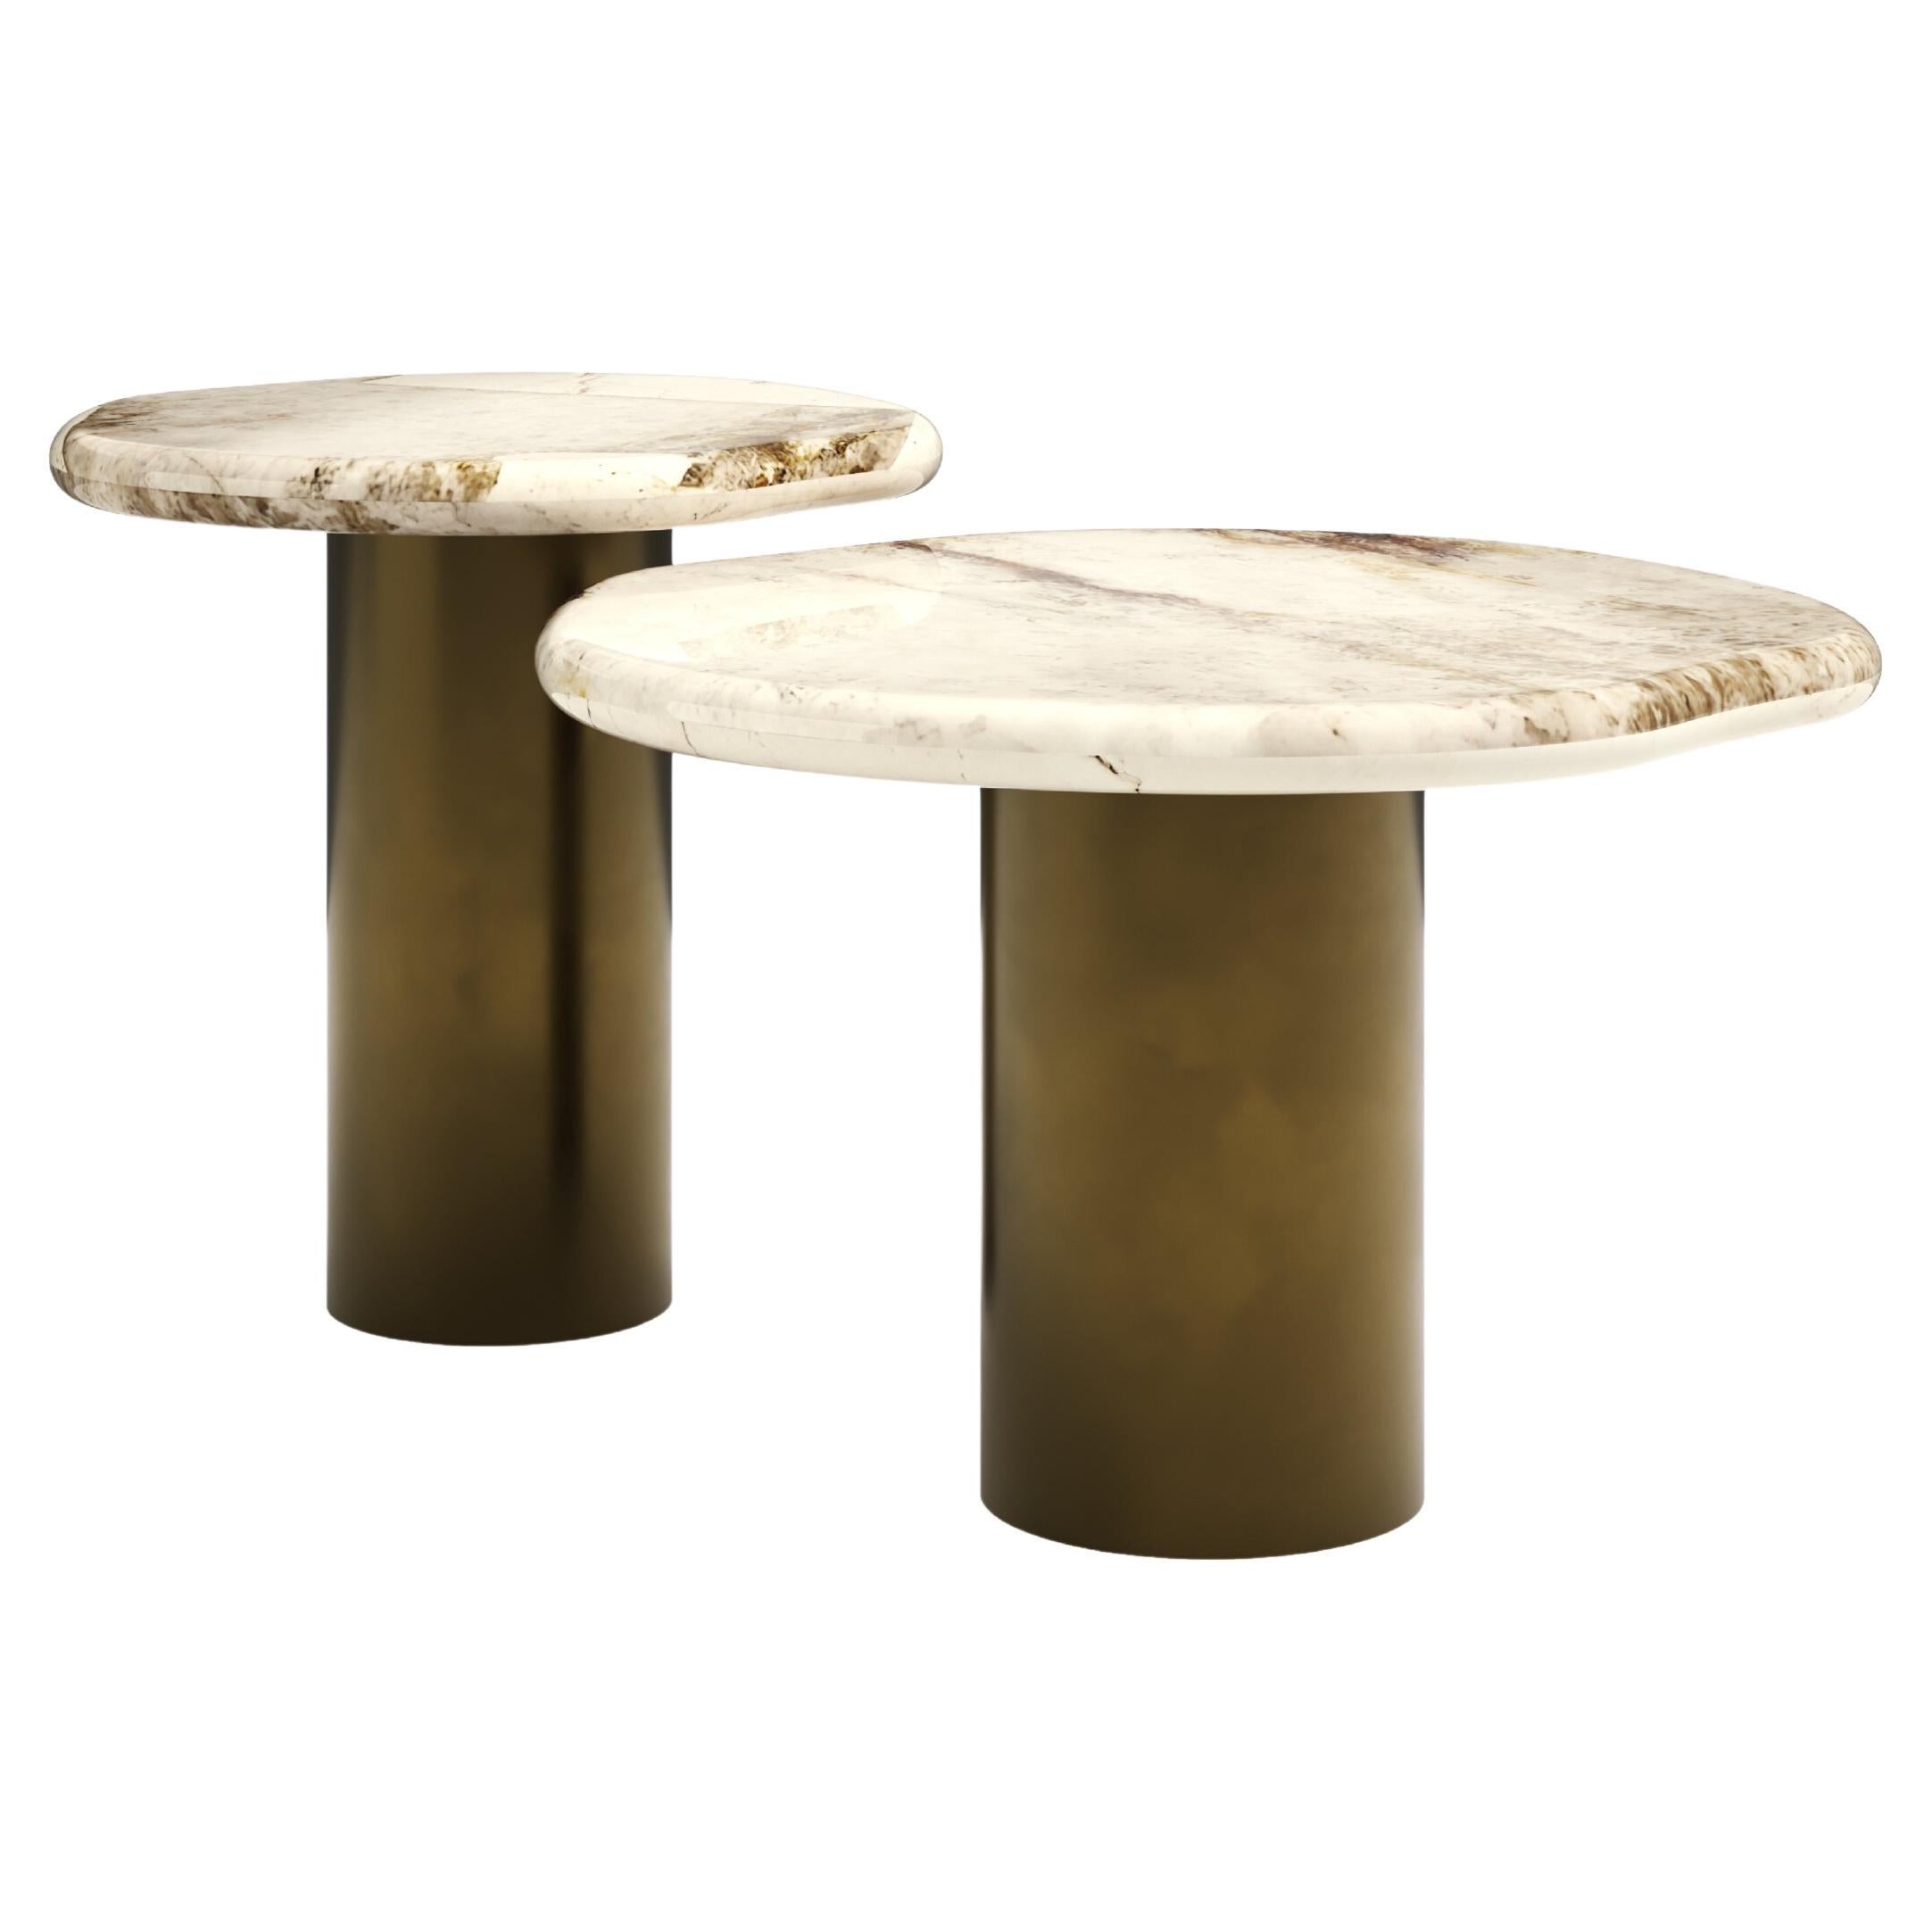 FORM(LA) Lago Round Side Table 24”L x 24”W x 16”H Quartzite & Antique Bronze For Sale